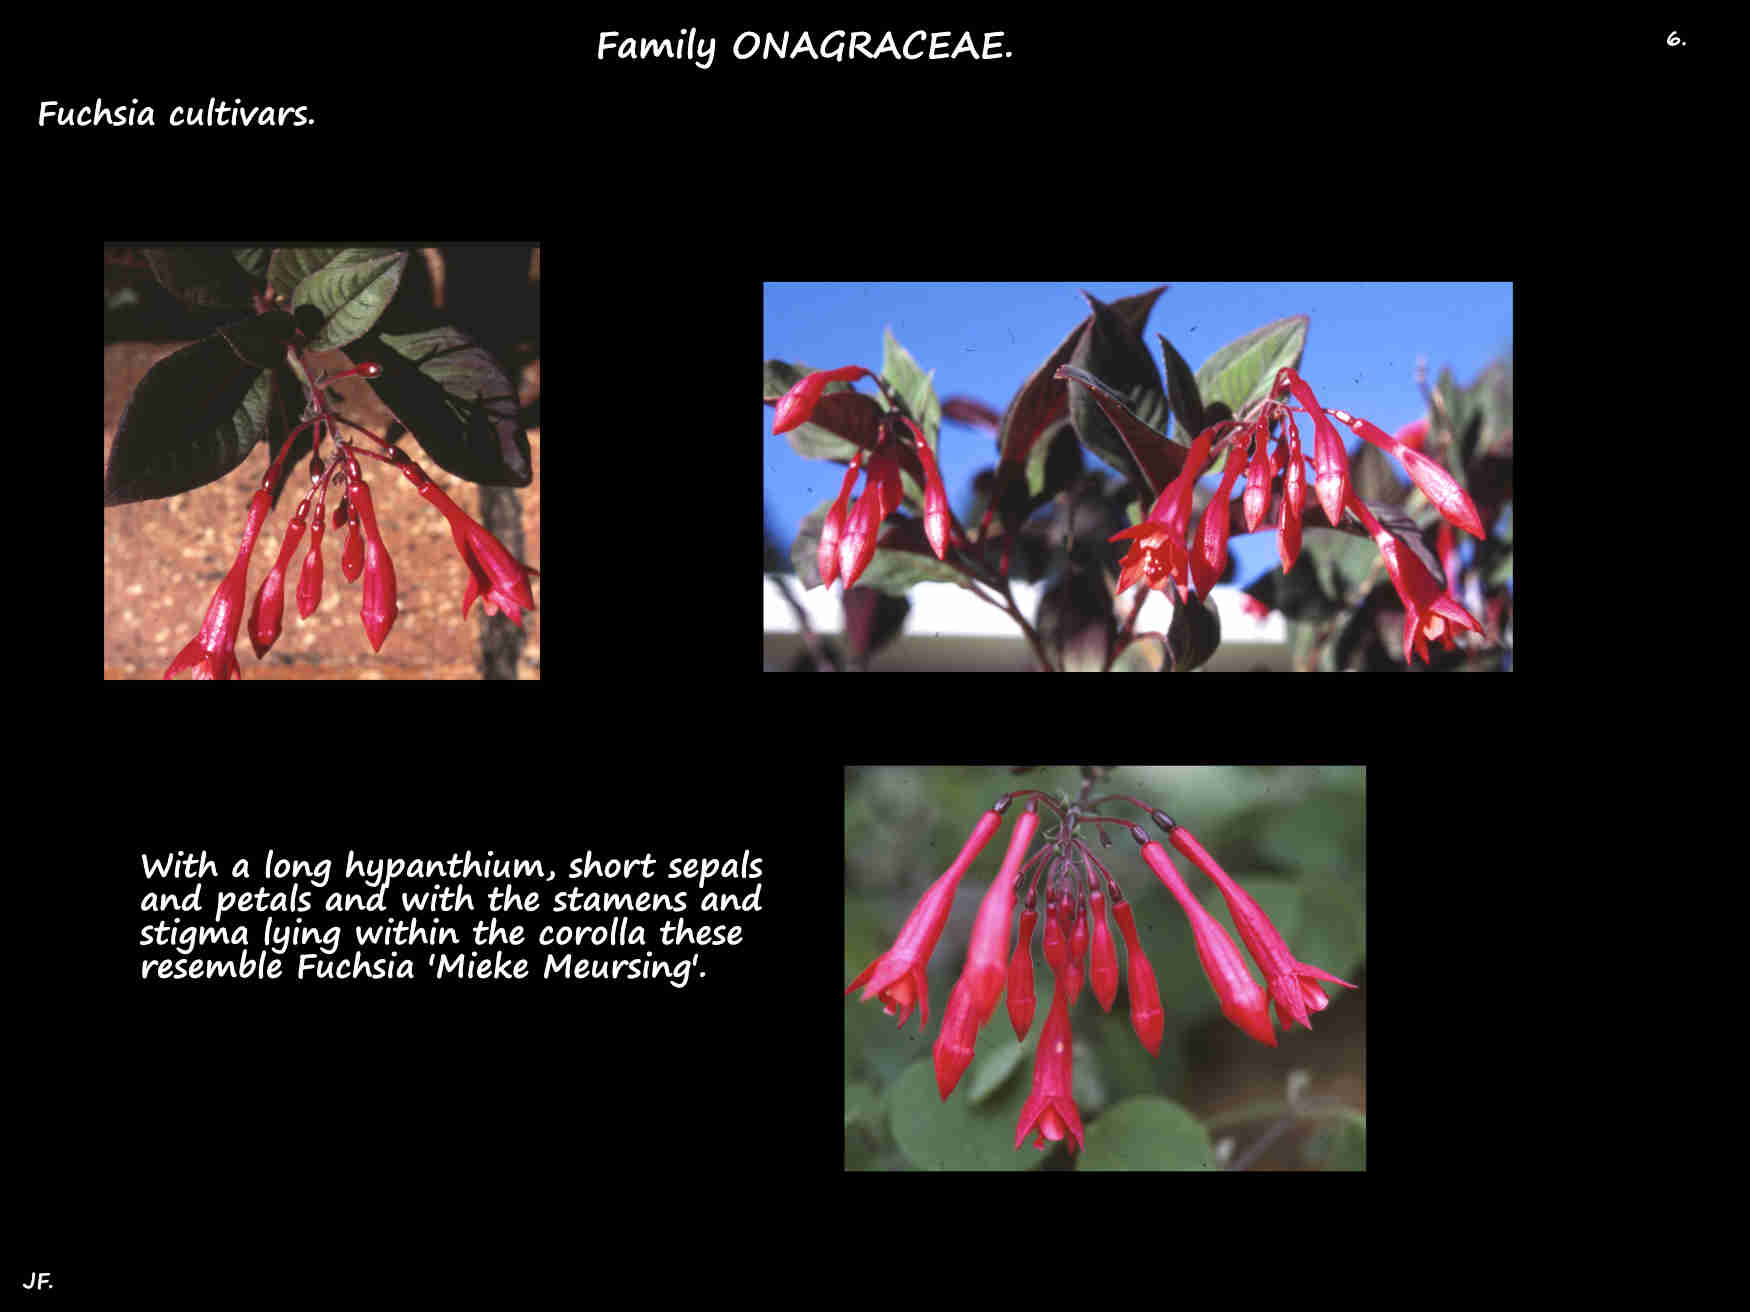 6 Another single Fuchsia cultivar